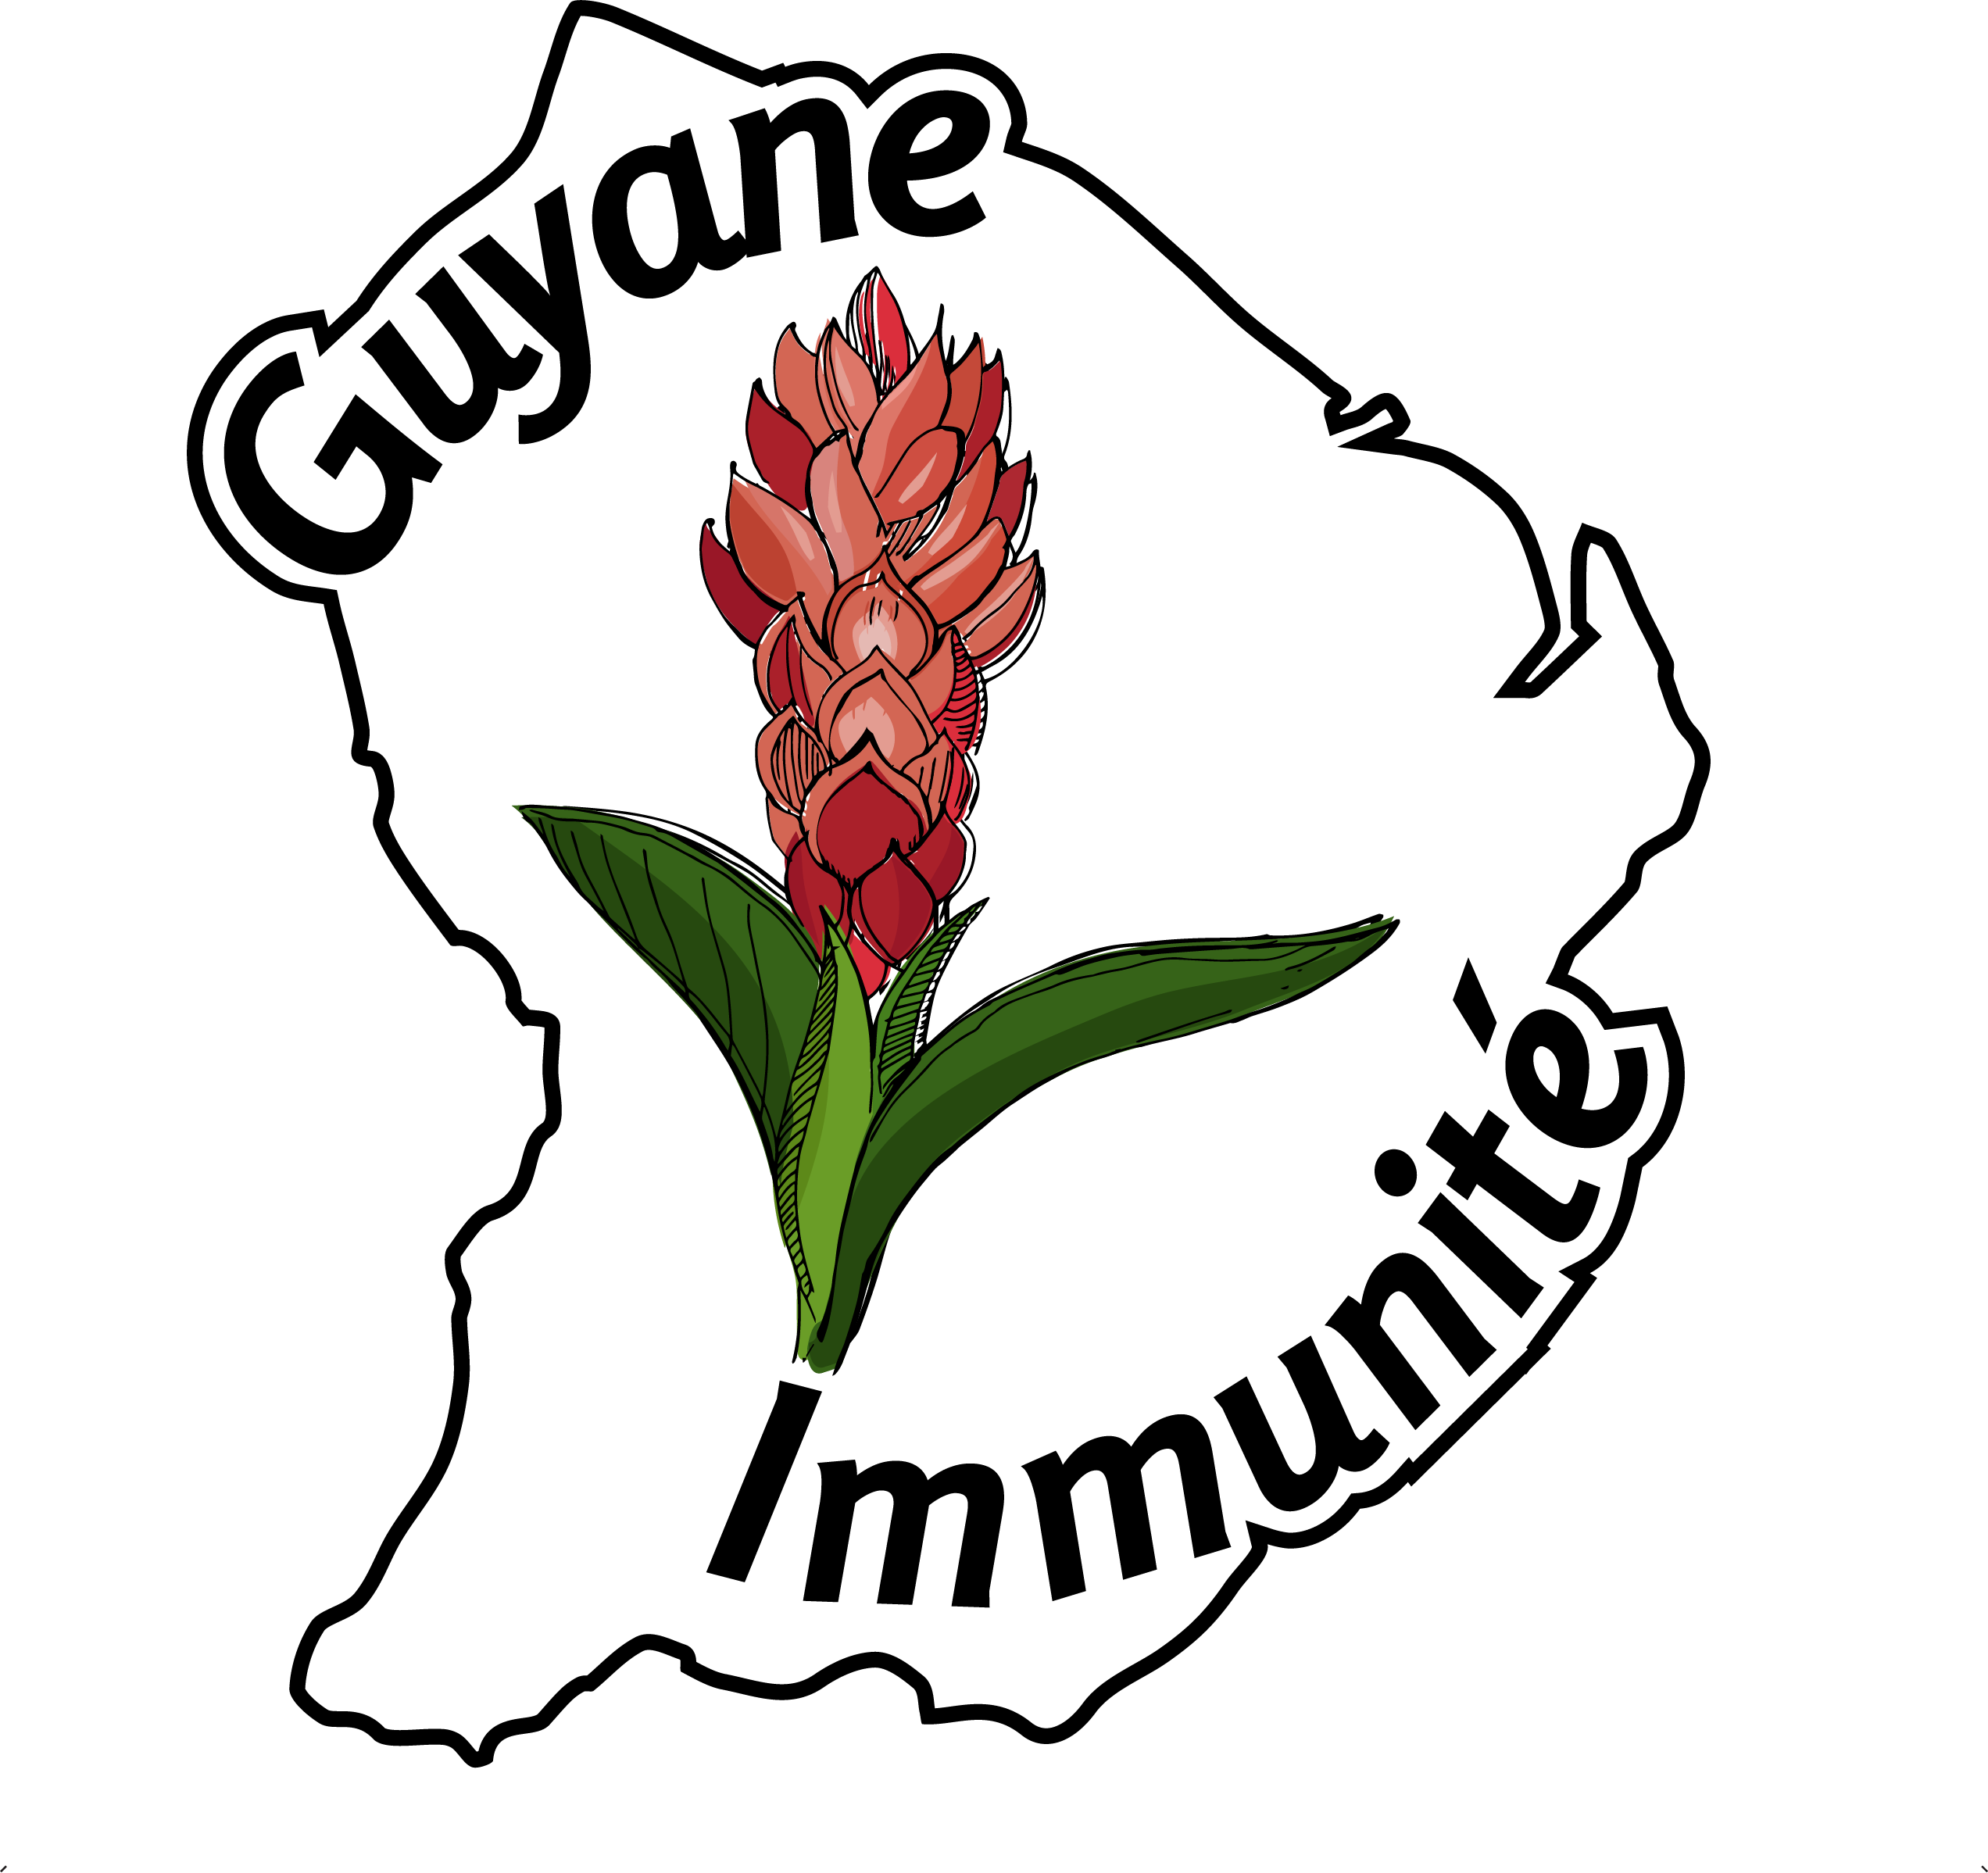 Guyane Immunite